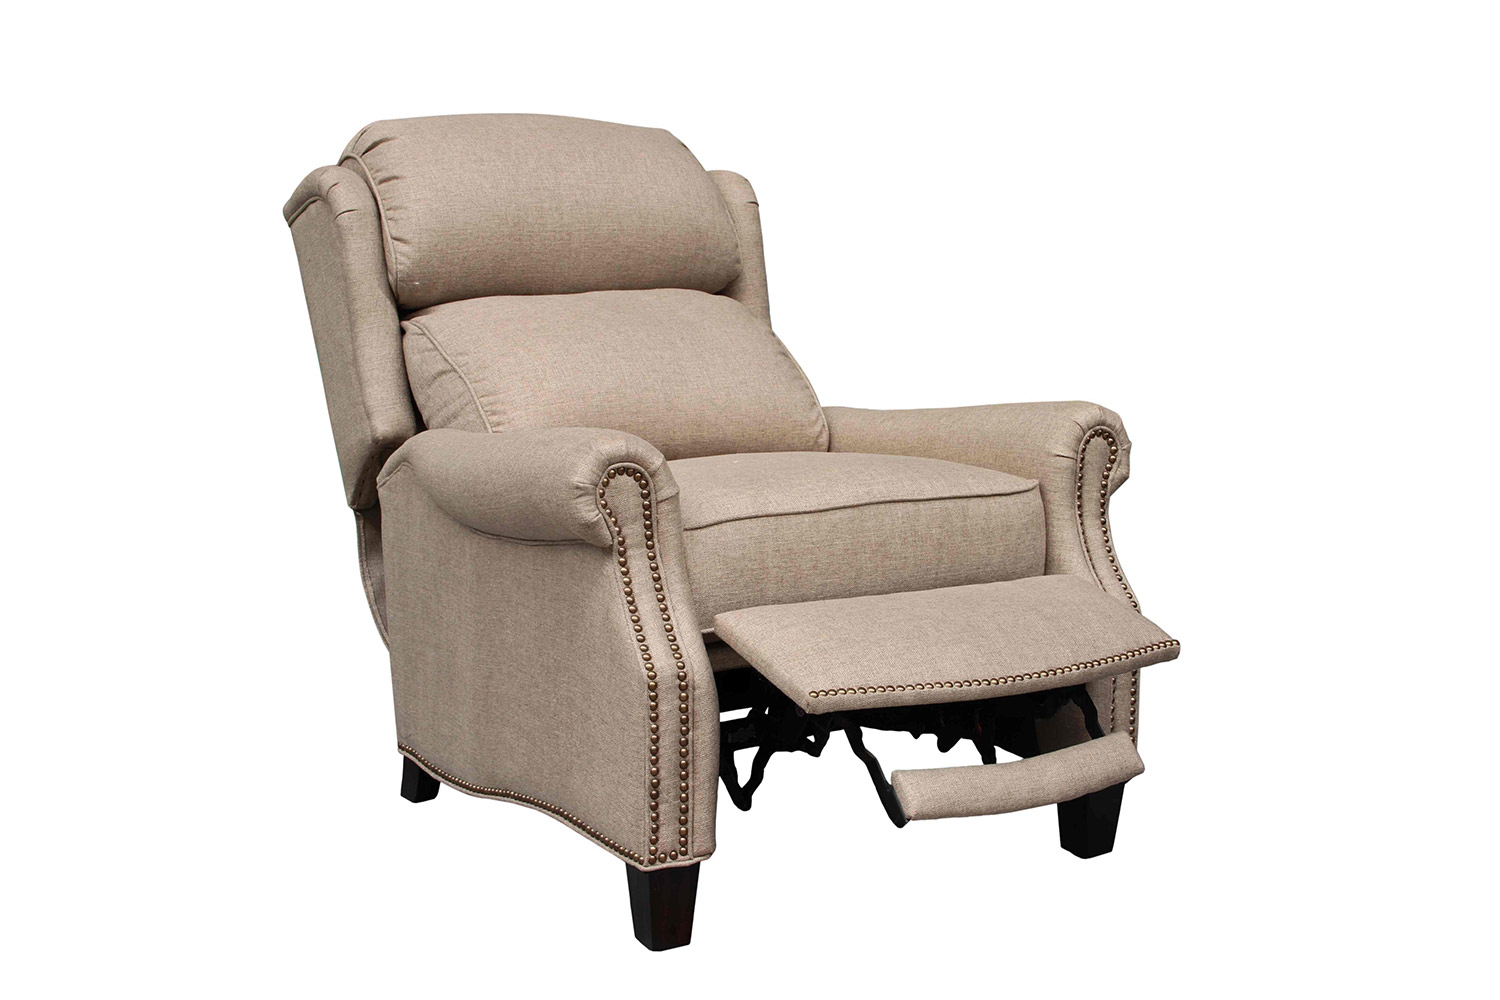 Barcalounger Meade Recliner Chair - Sisal fabric